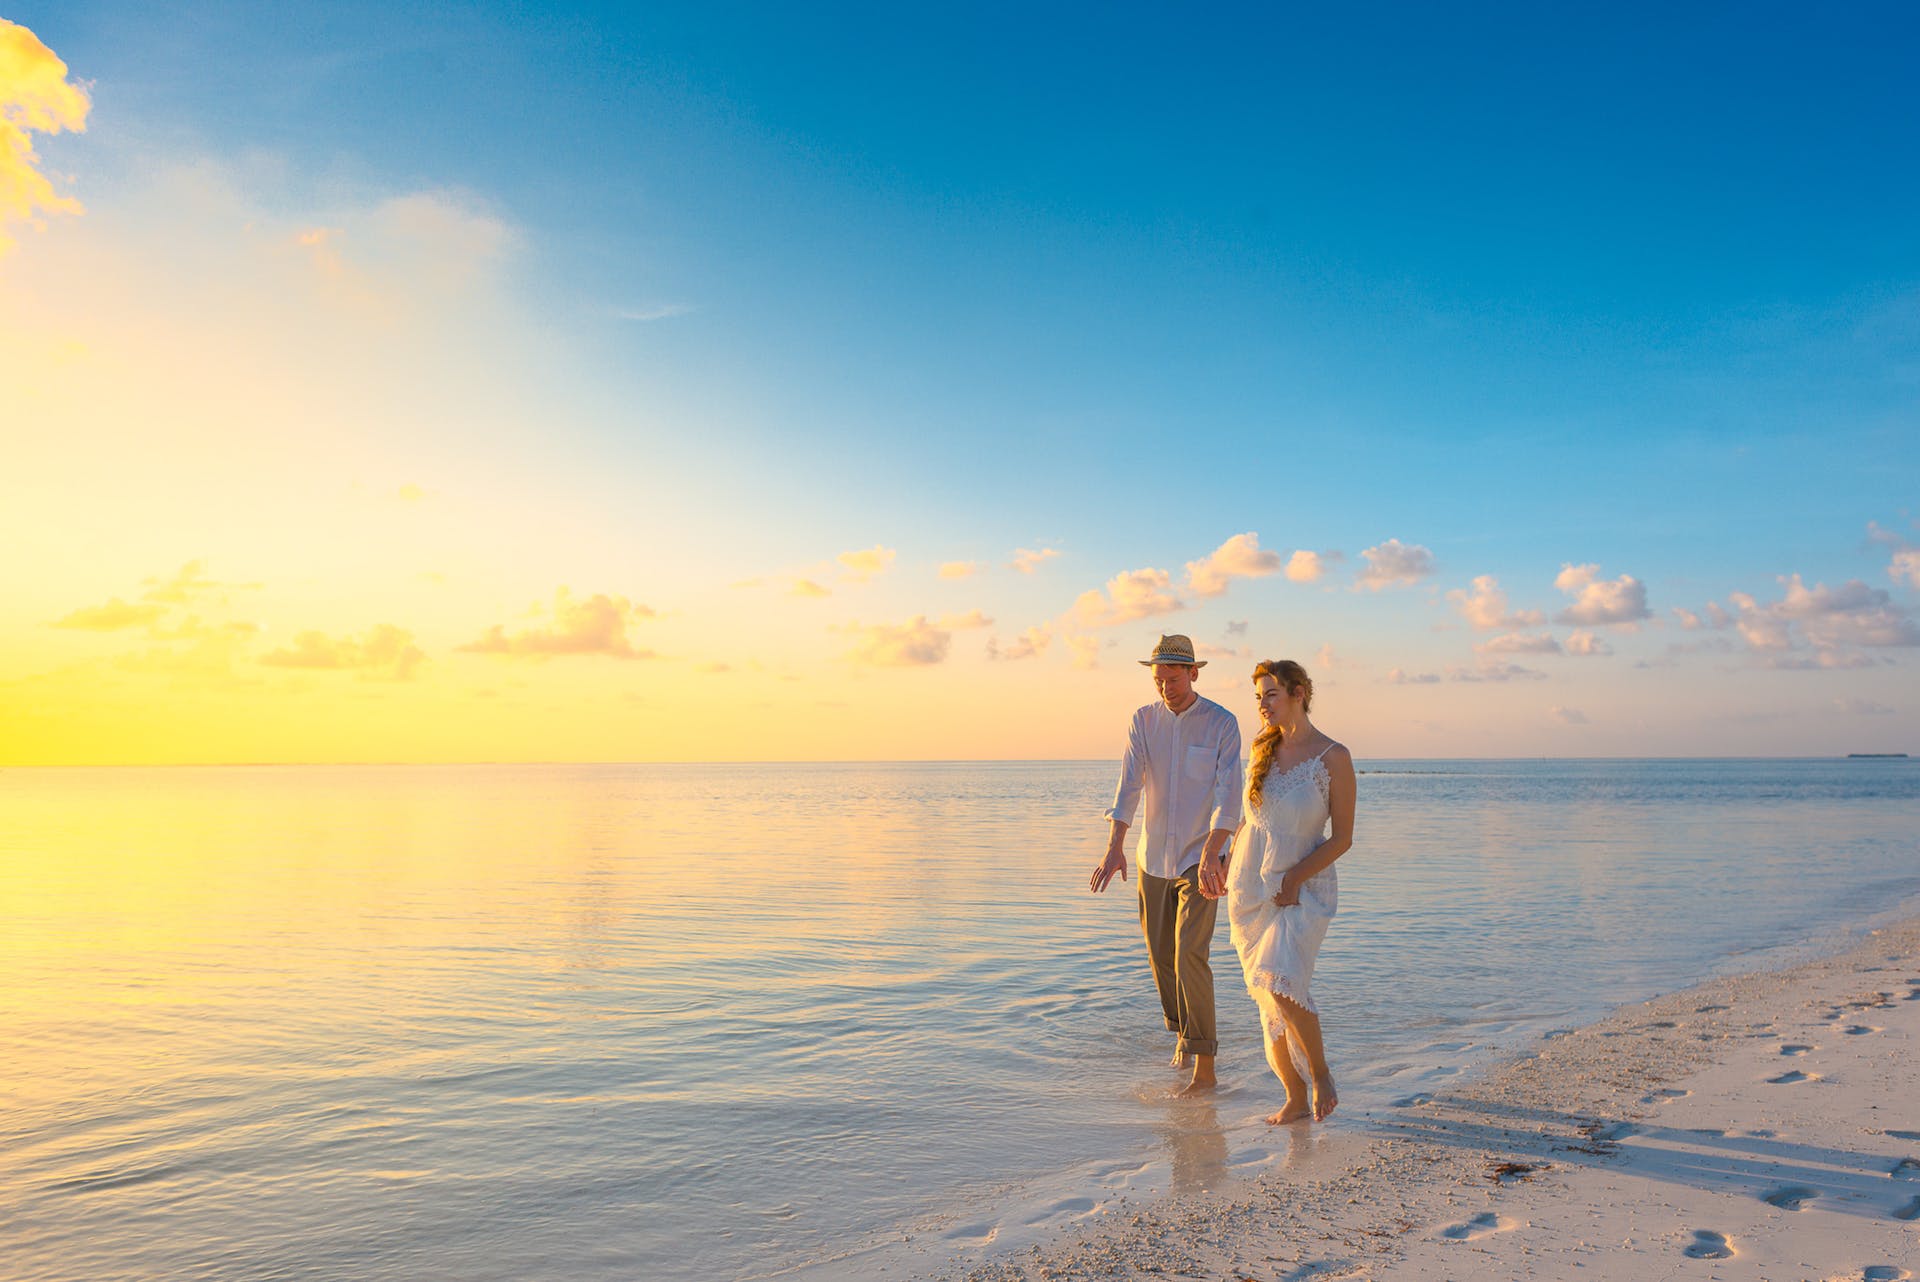 Un couple se promenant sur une plage | Source : Pexels